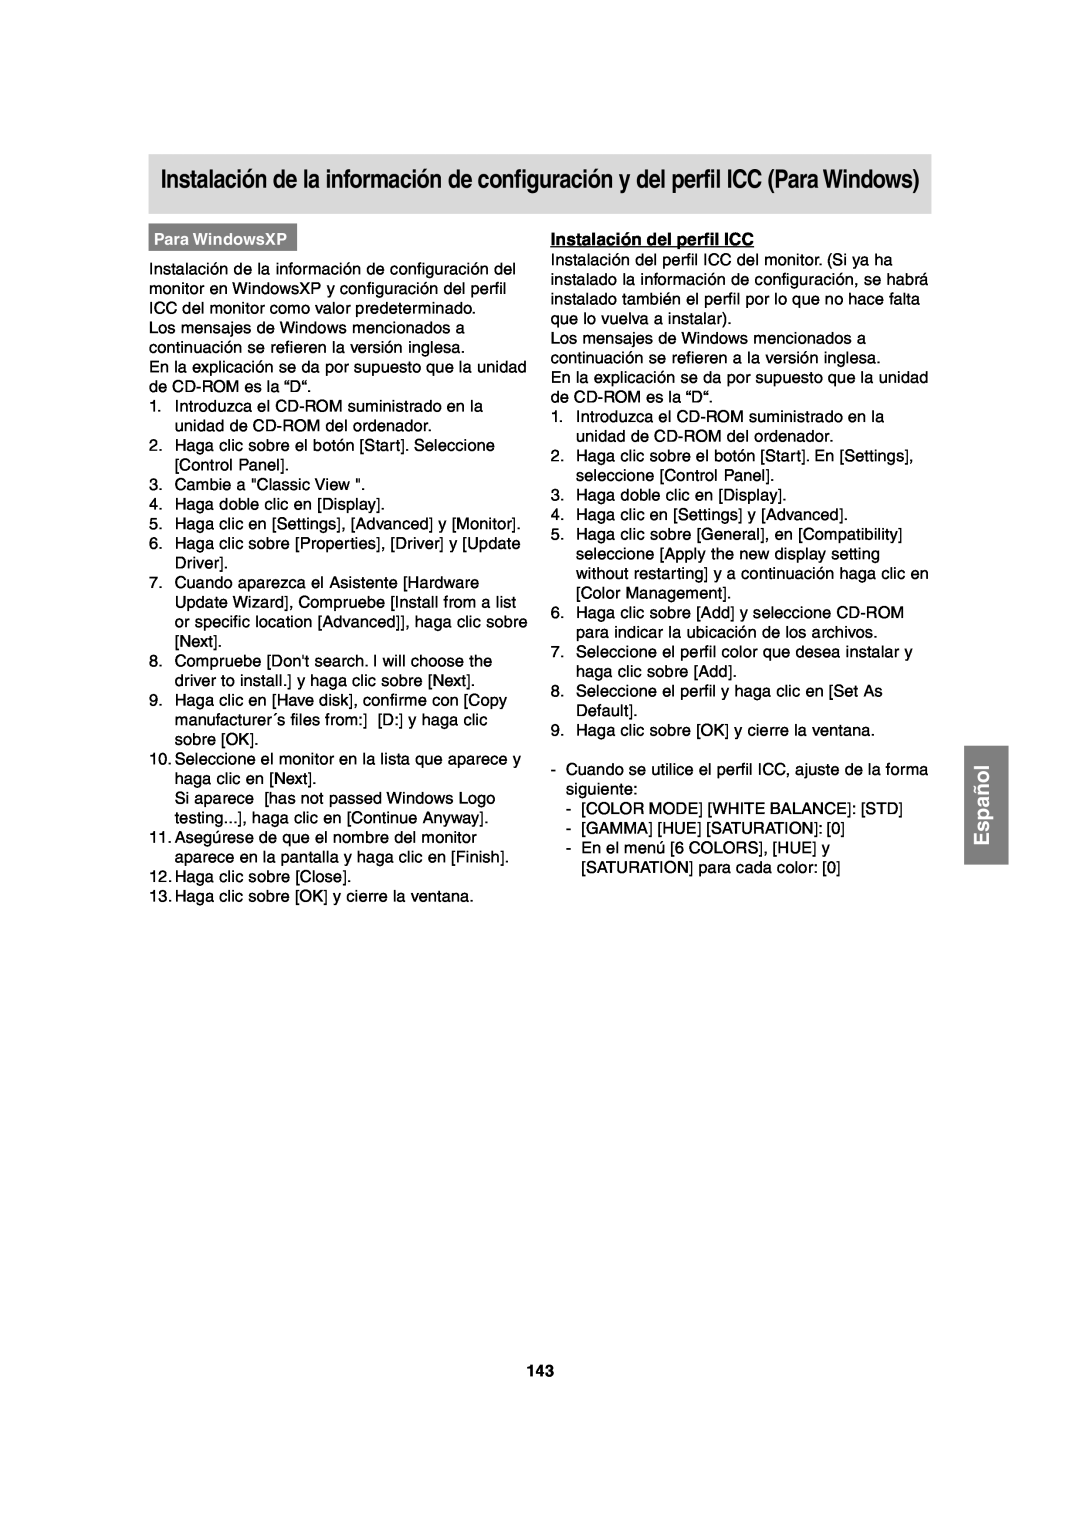 Sharp LL-T2020 operation manual Instalación del perfil ICC, Para WindowsXP, Español 